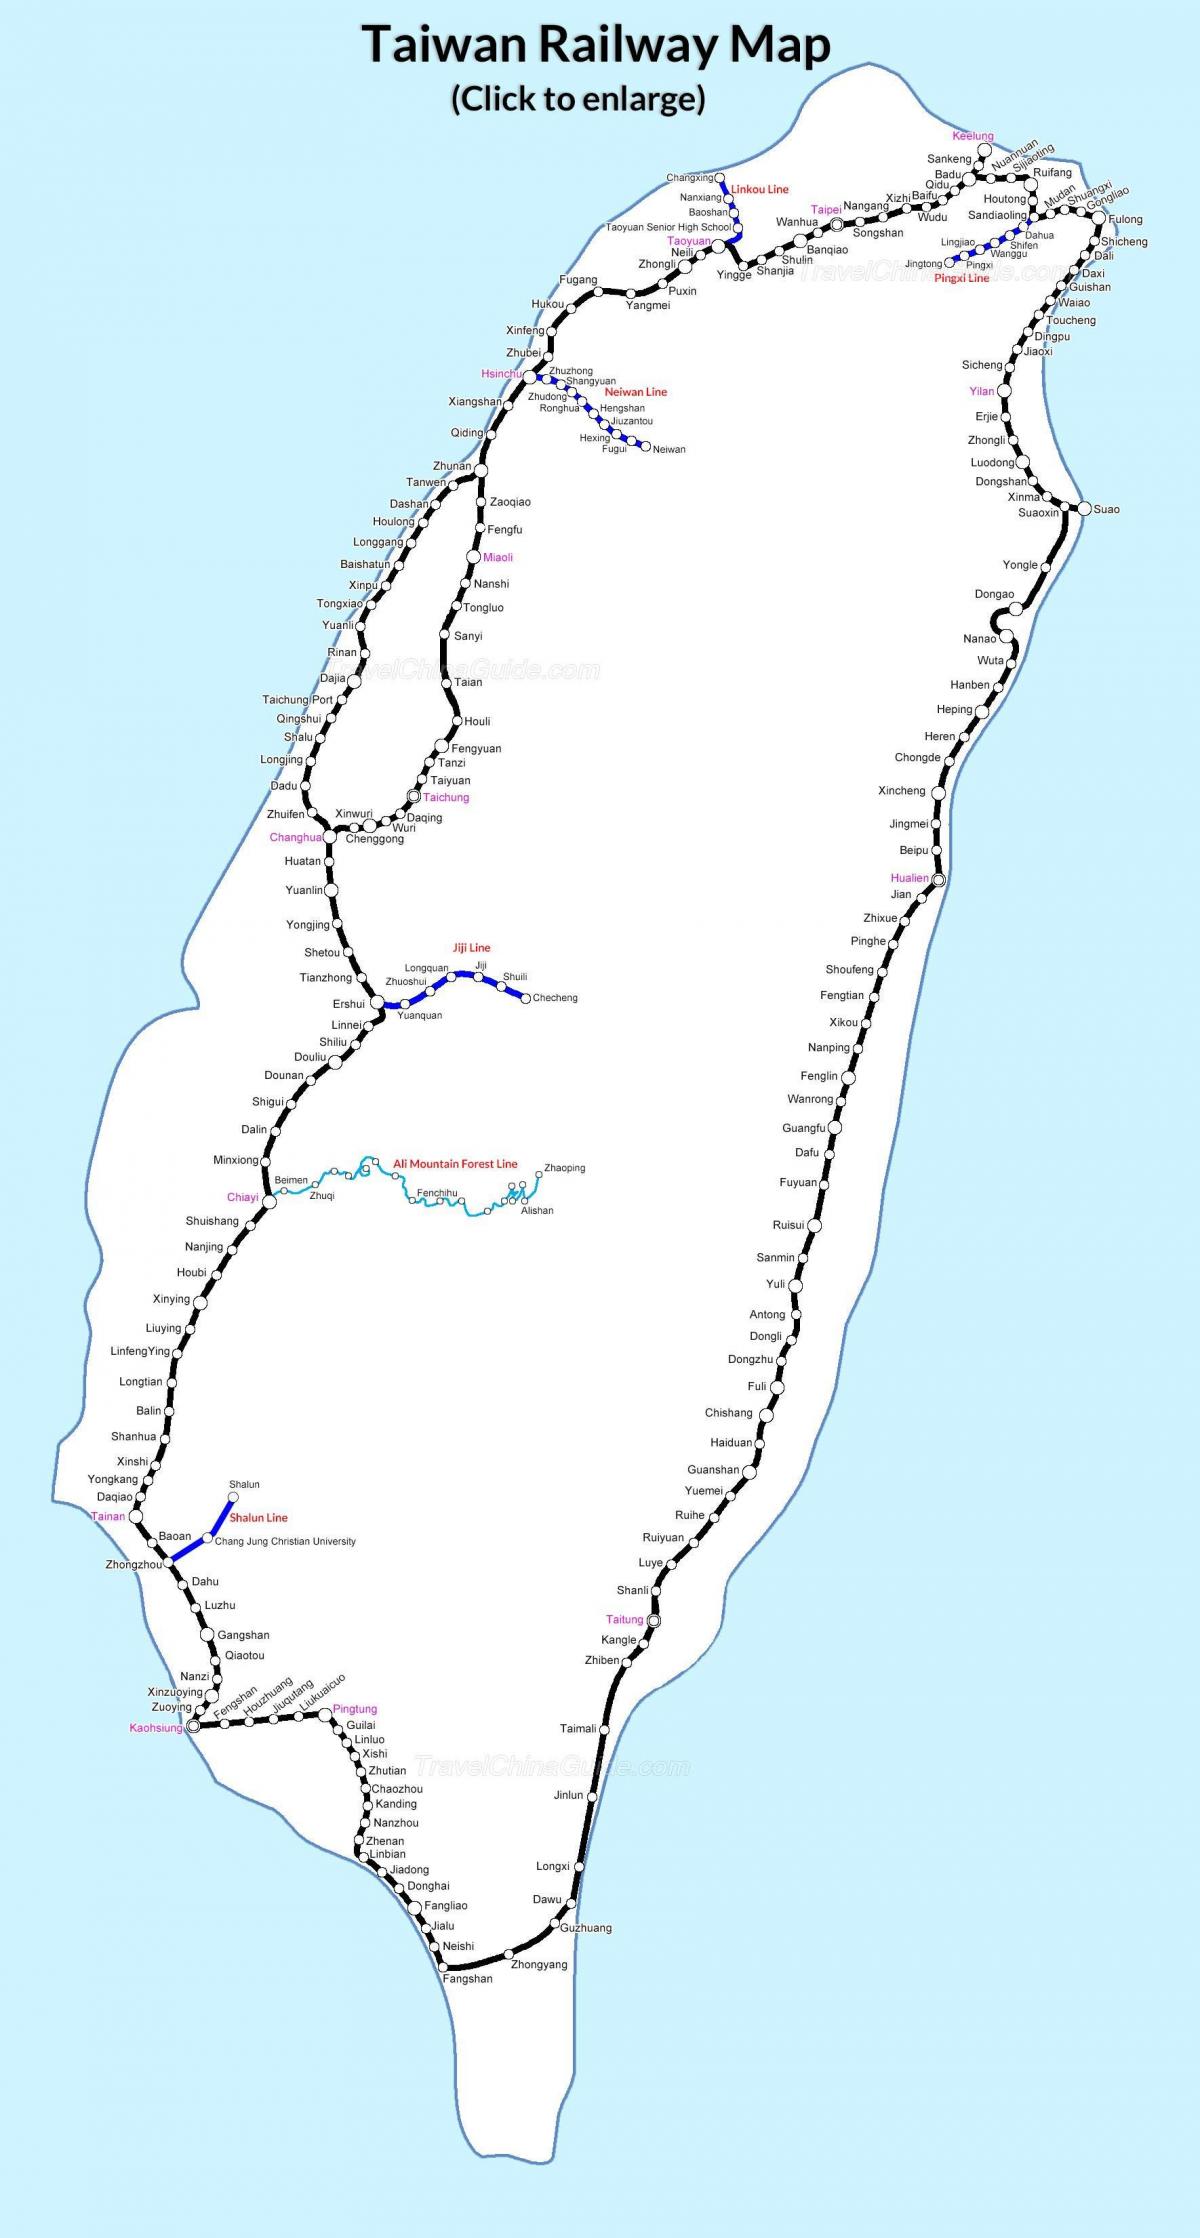 железничката мапата Тајван